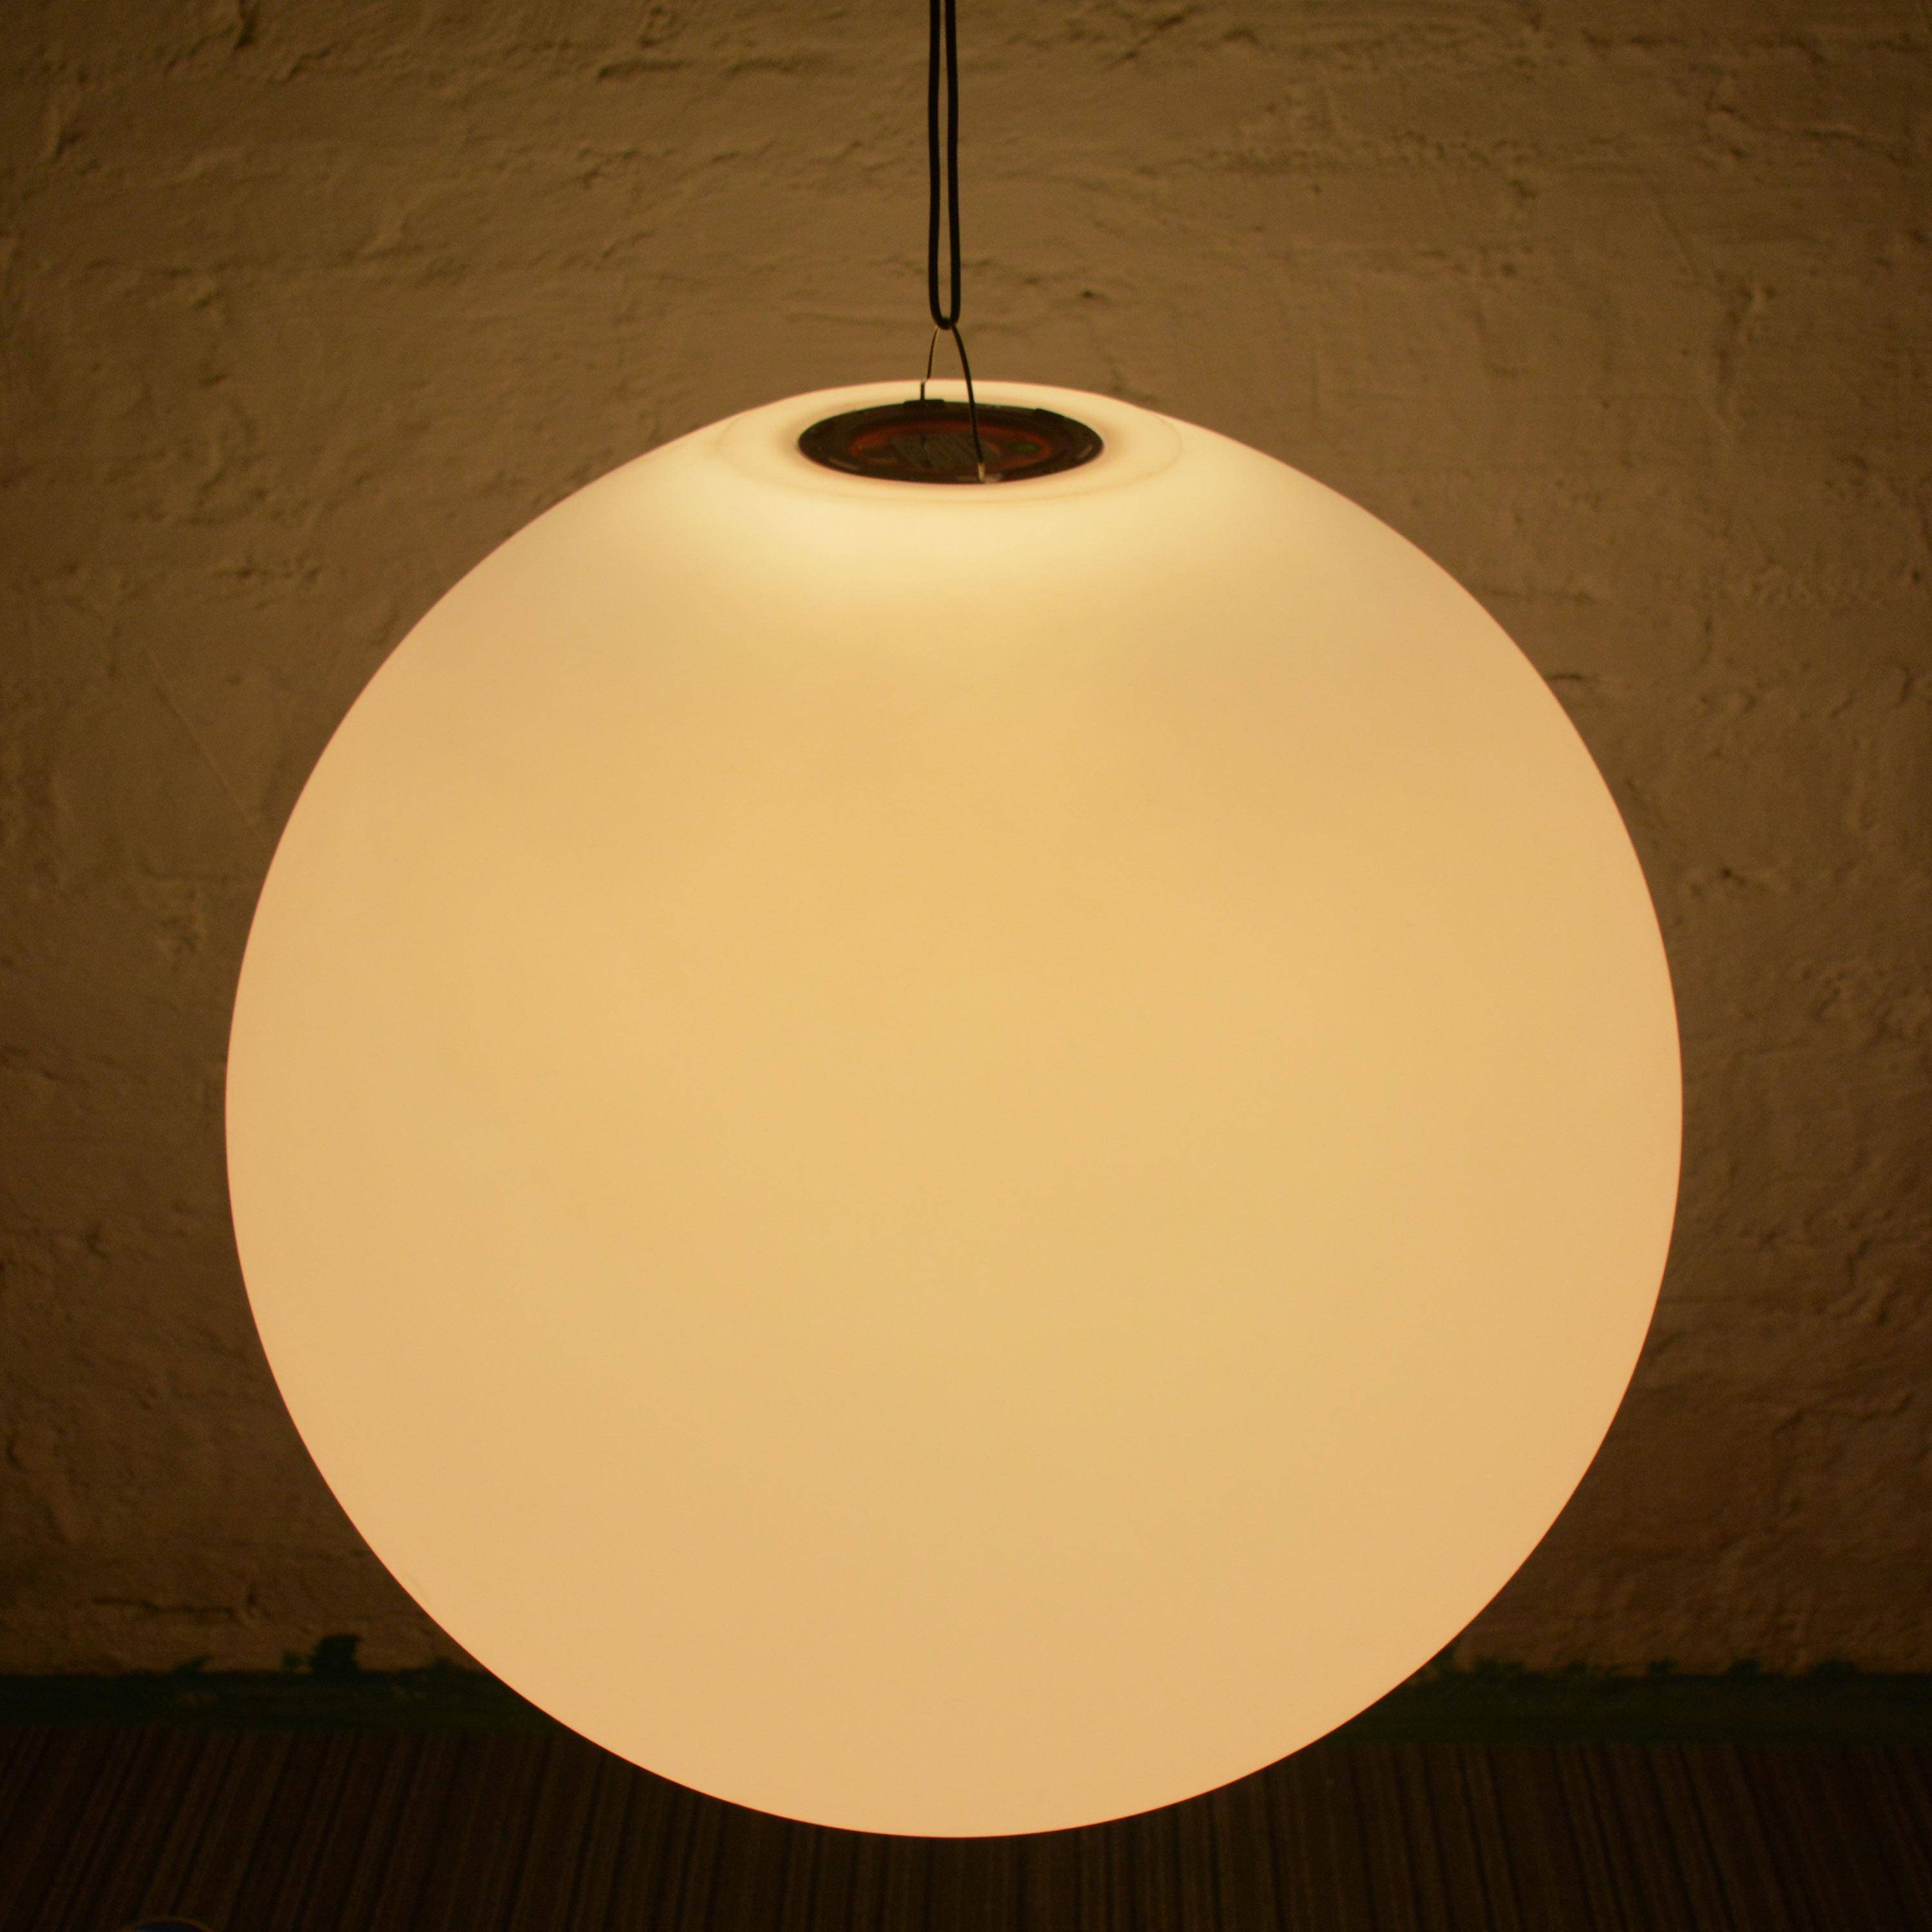 Boule LED 30cm – Sphère décorative lumineuse, Ø30cm, blanc chaud, commande à distance,sweeek,Photo6